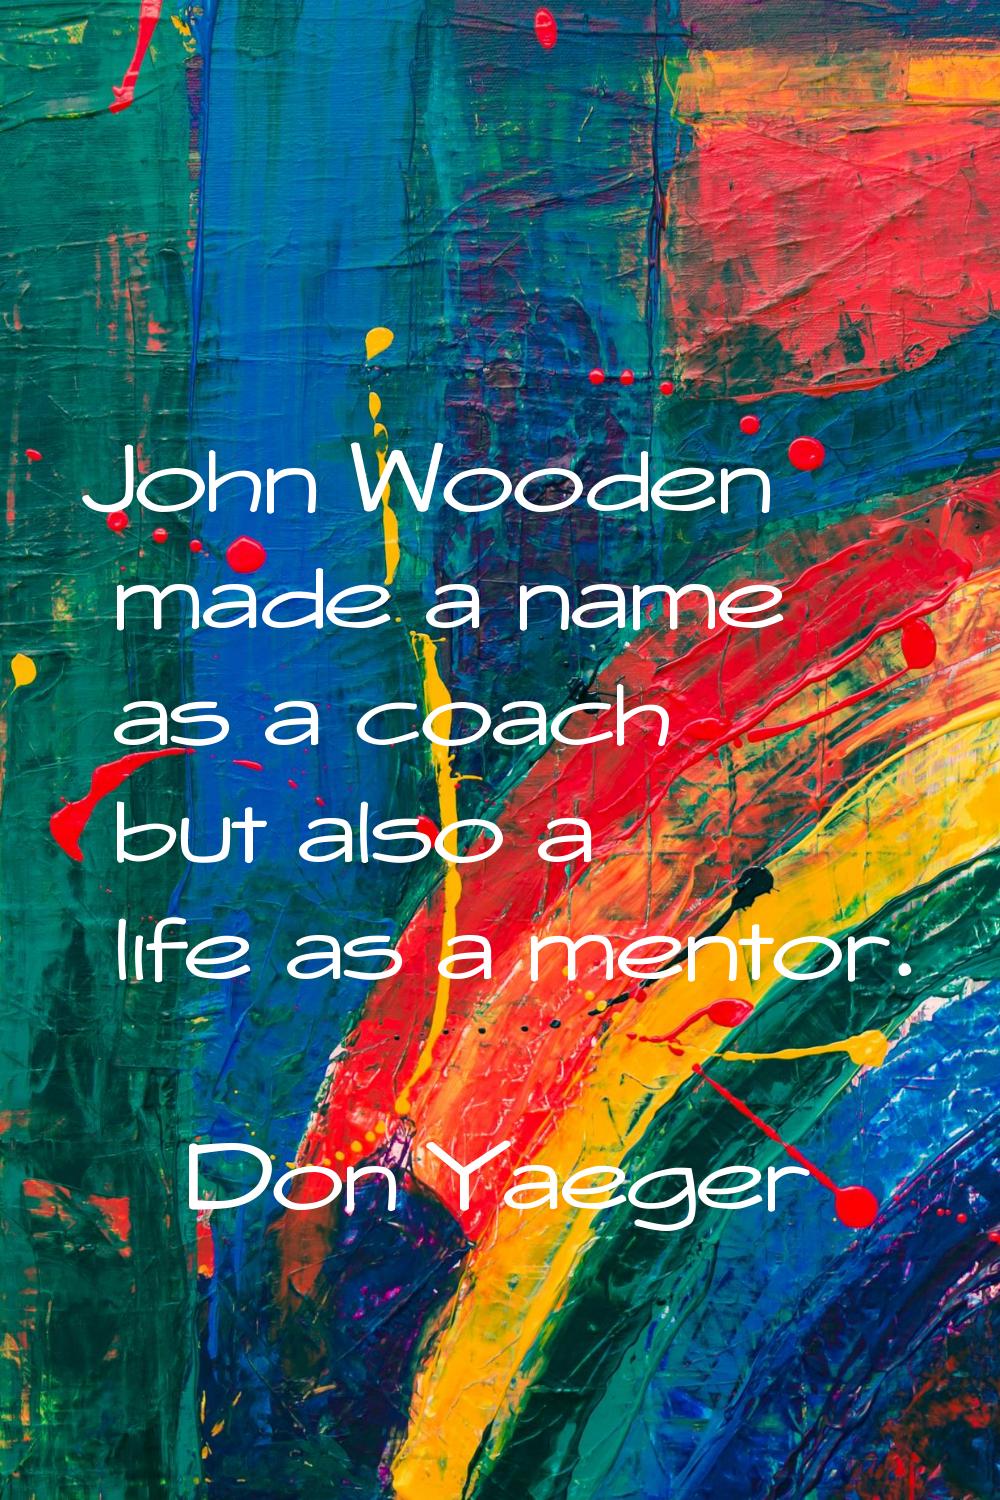 John Wooden made a name as a coach but also a life as a mentor.